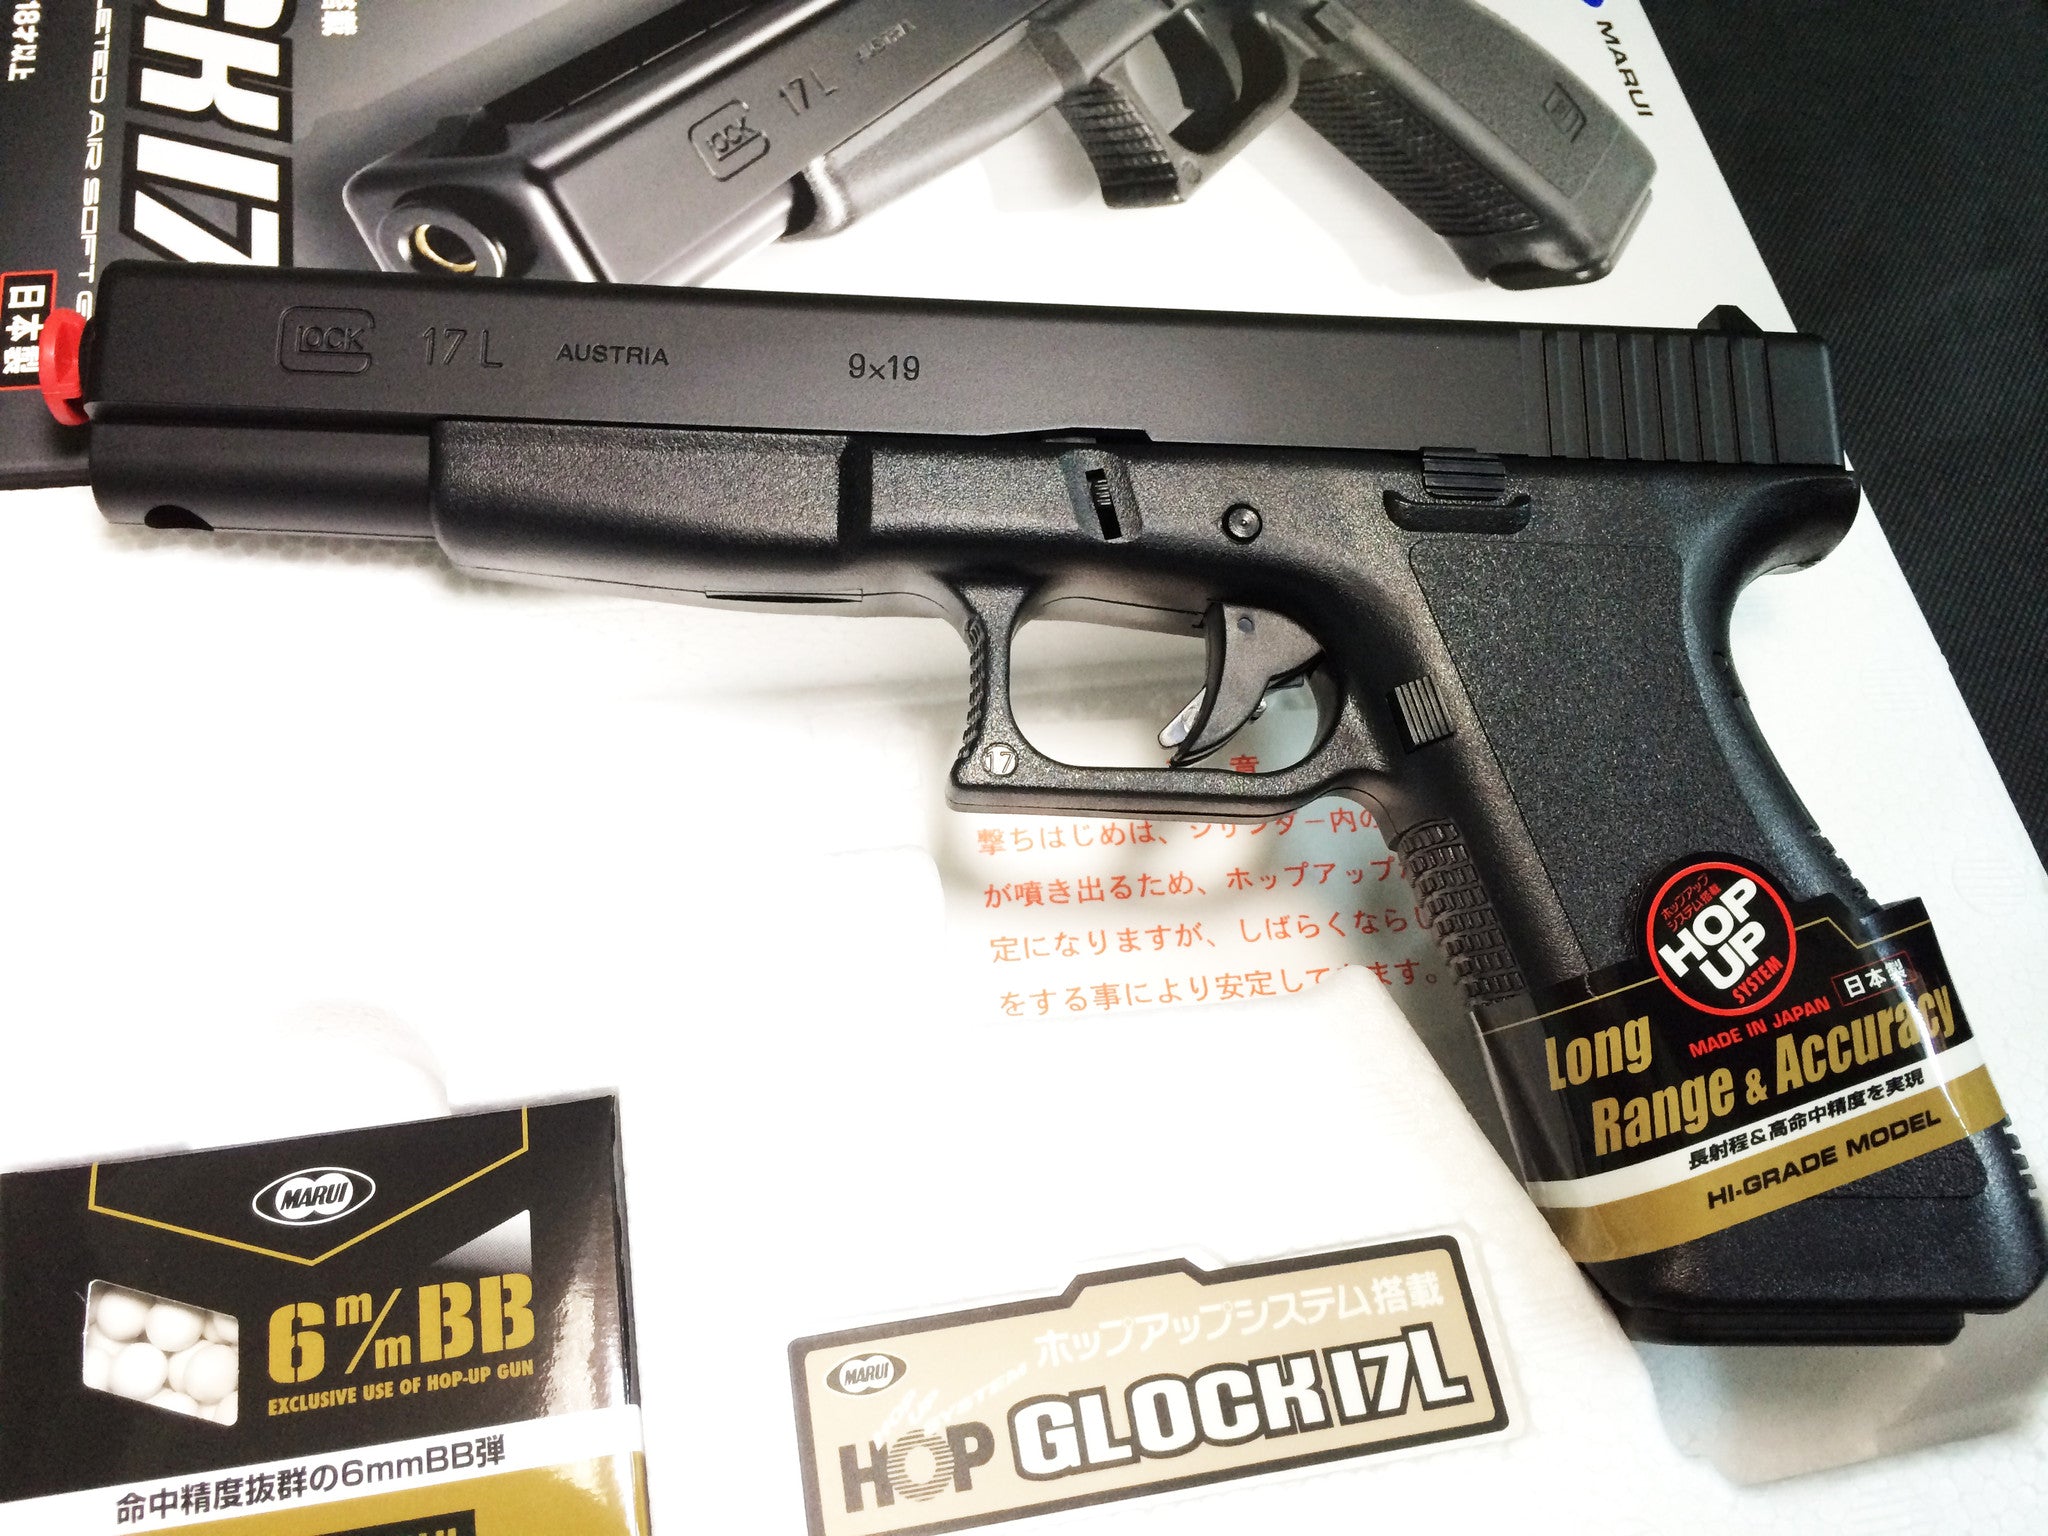 Tokyo Marui G17L Spring Pistol (HG, Hop Up)